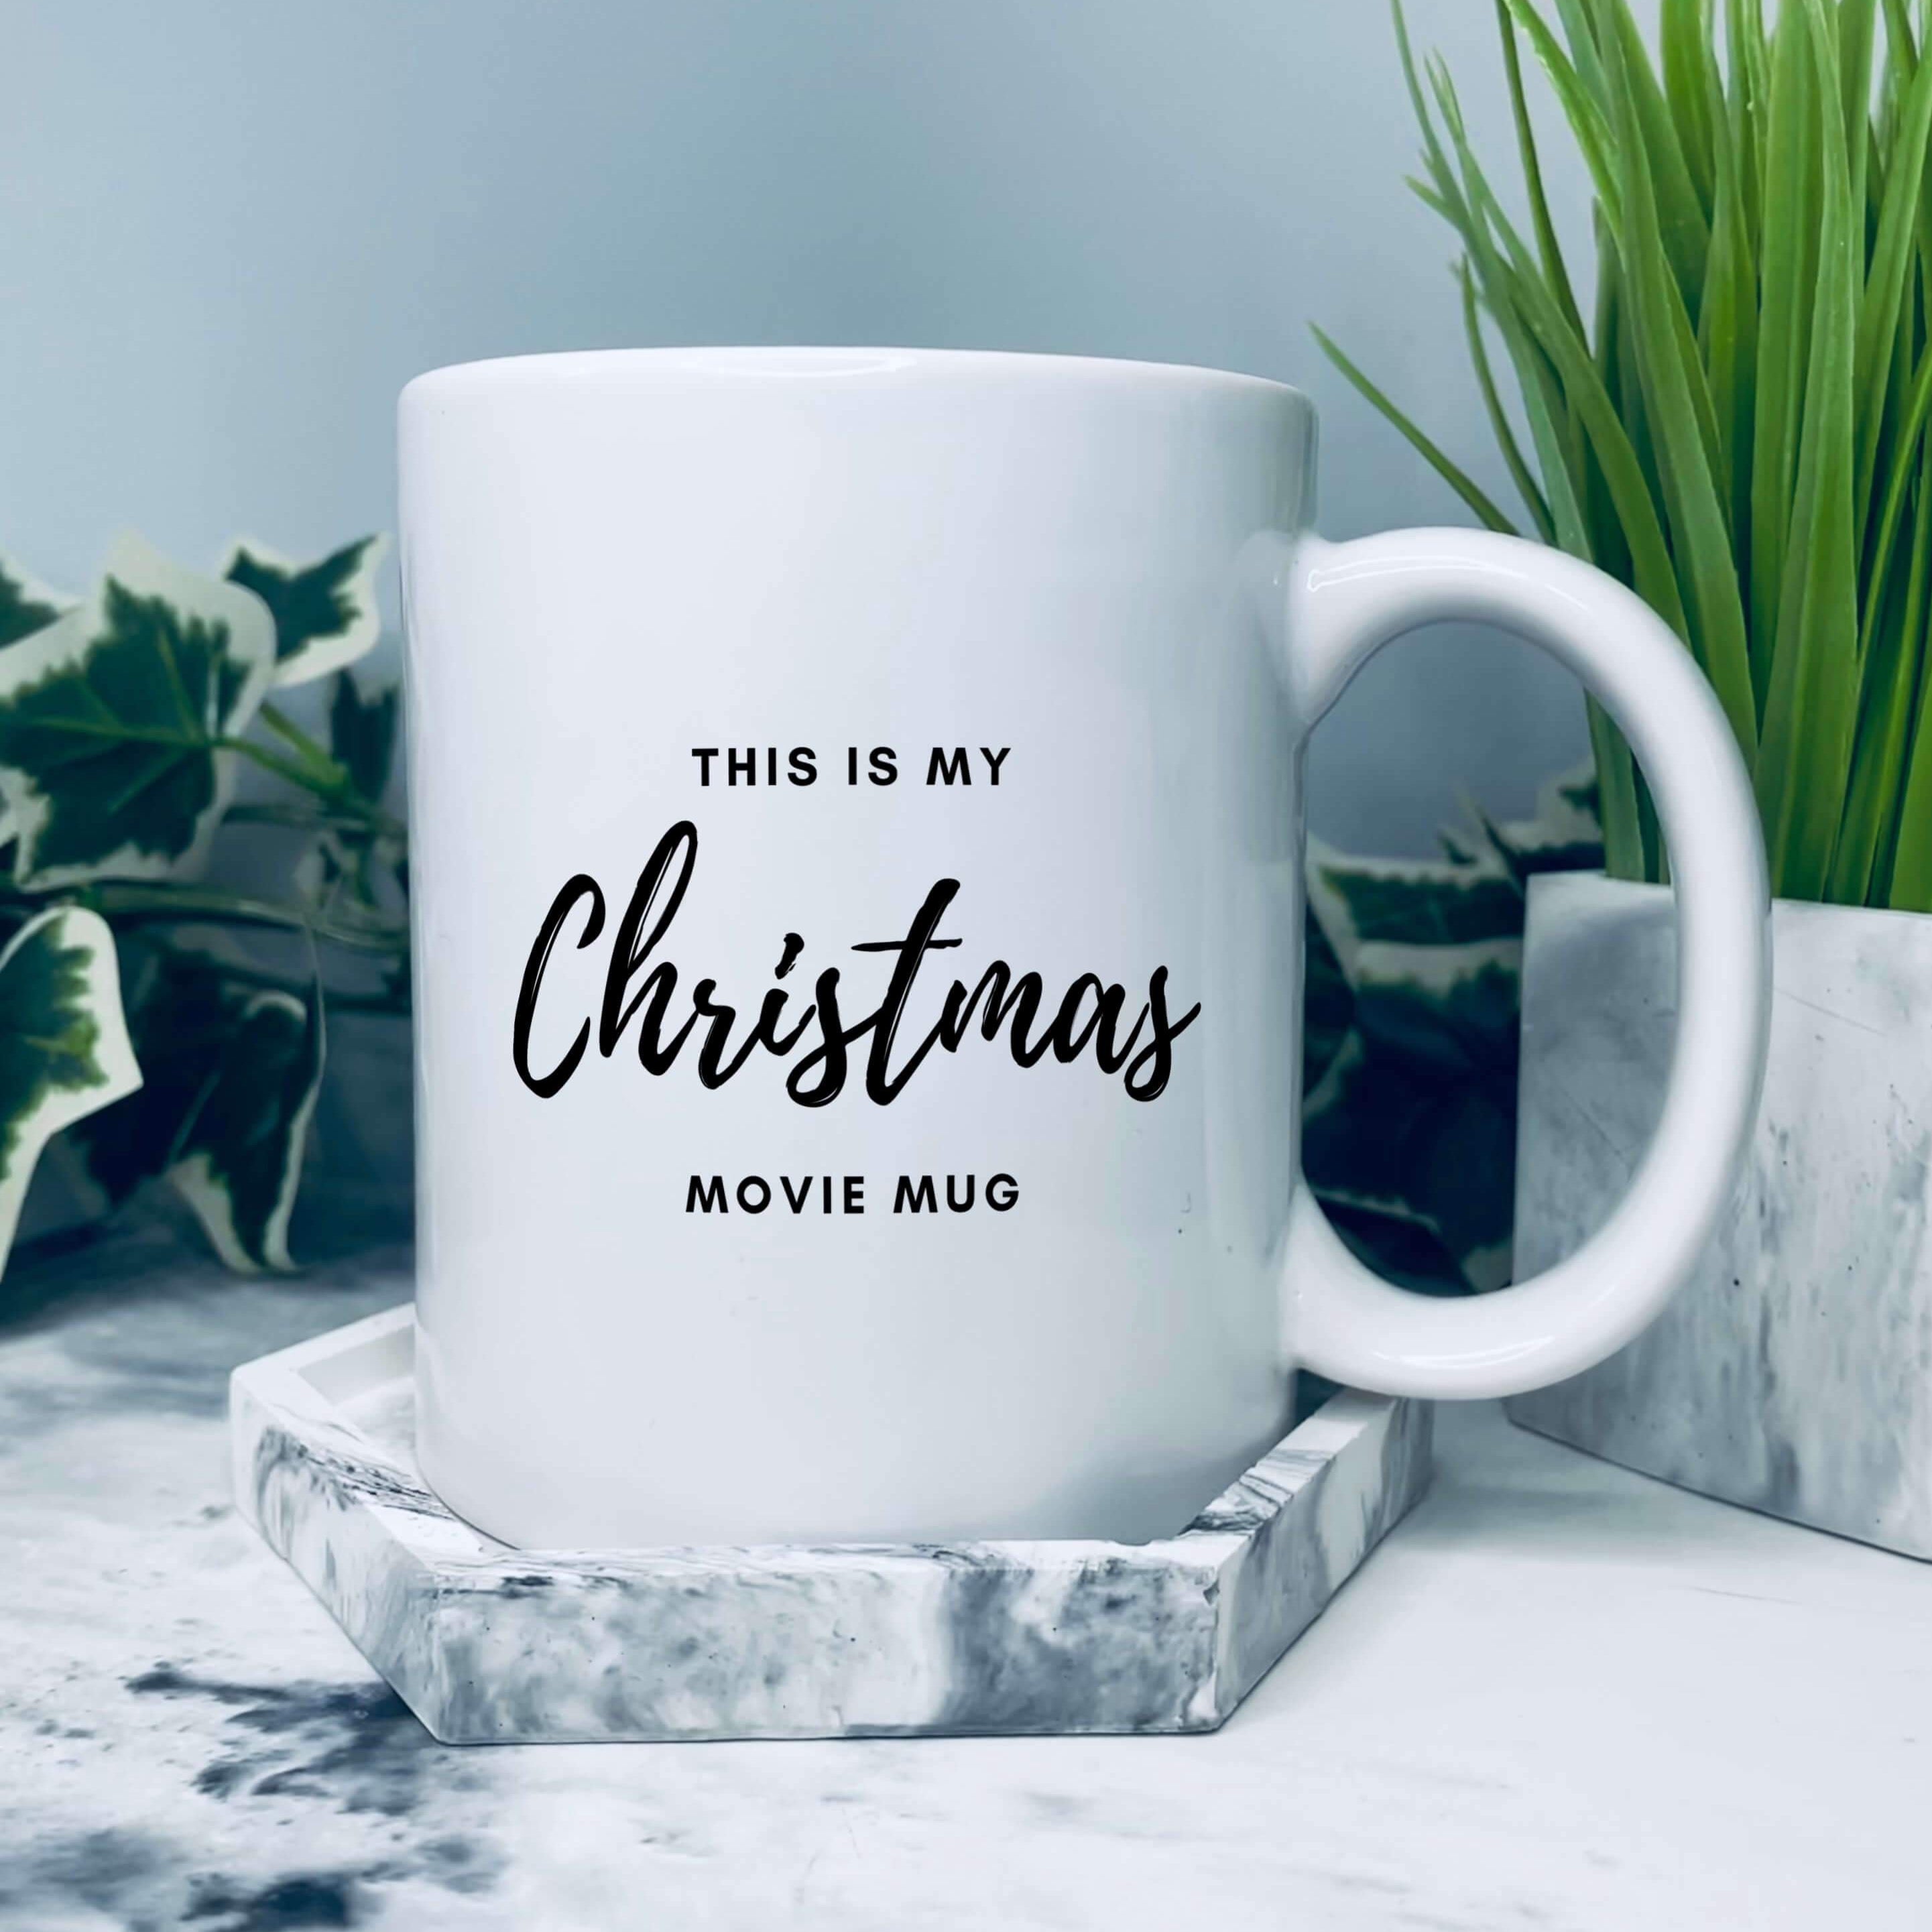 Mug that says: This is my christmas movie mug